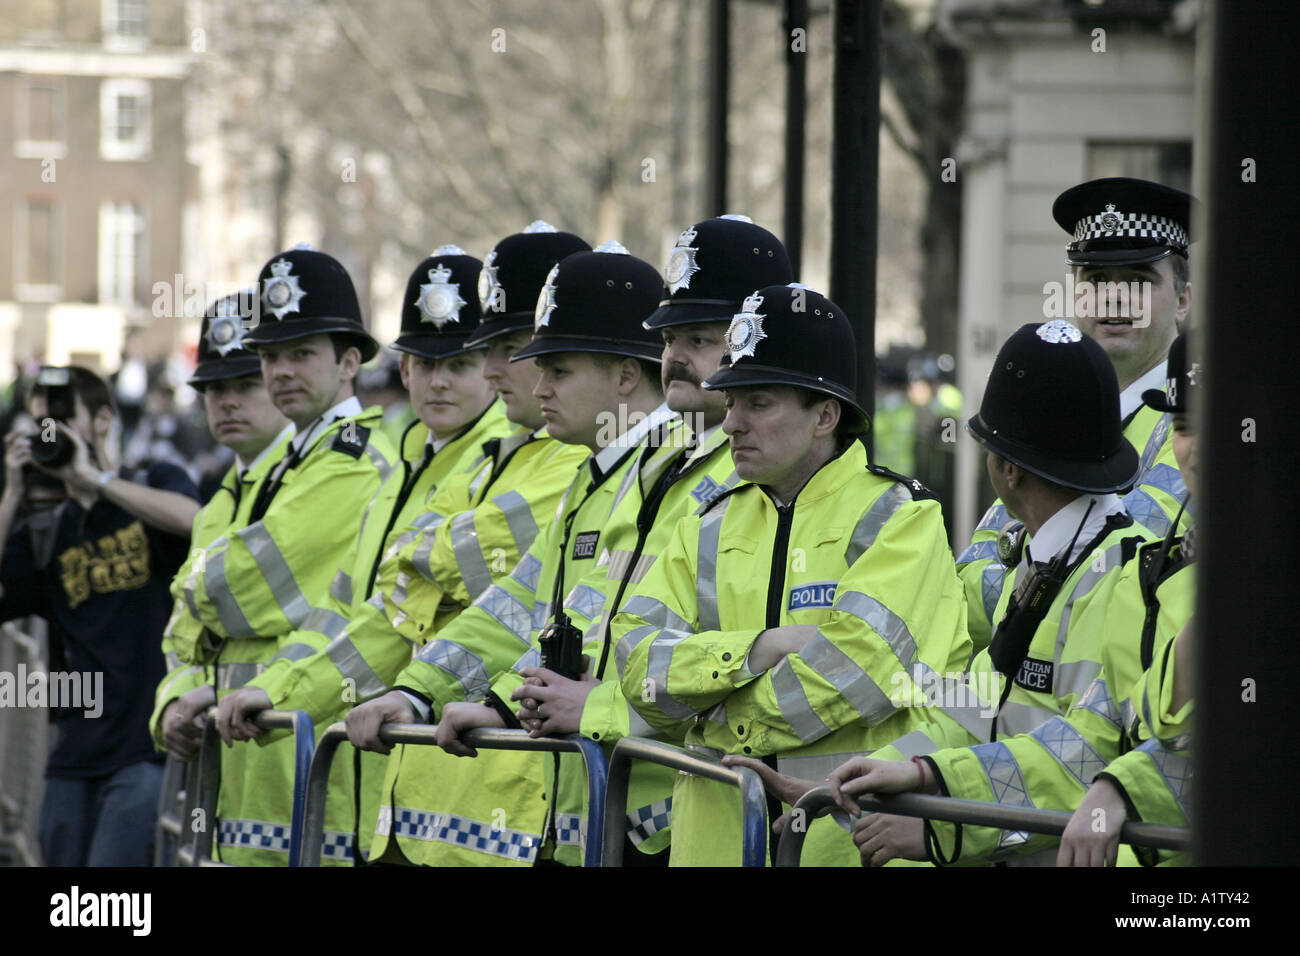 Les officiers de la police britannique à Londres Angleterre Royaume-uni Banque D'Images